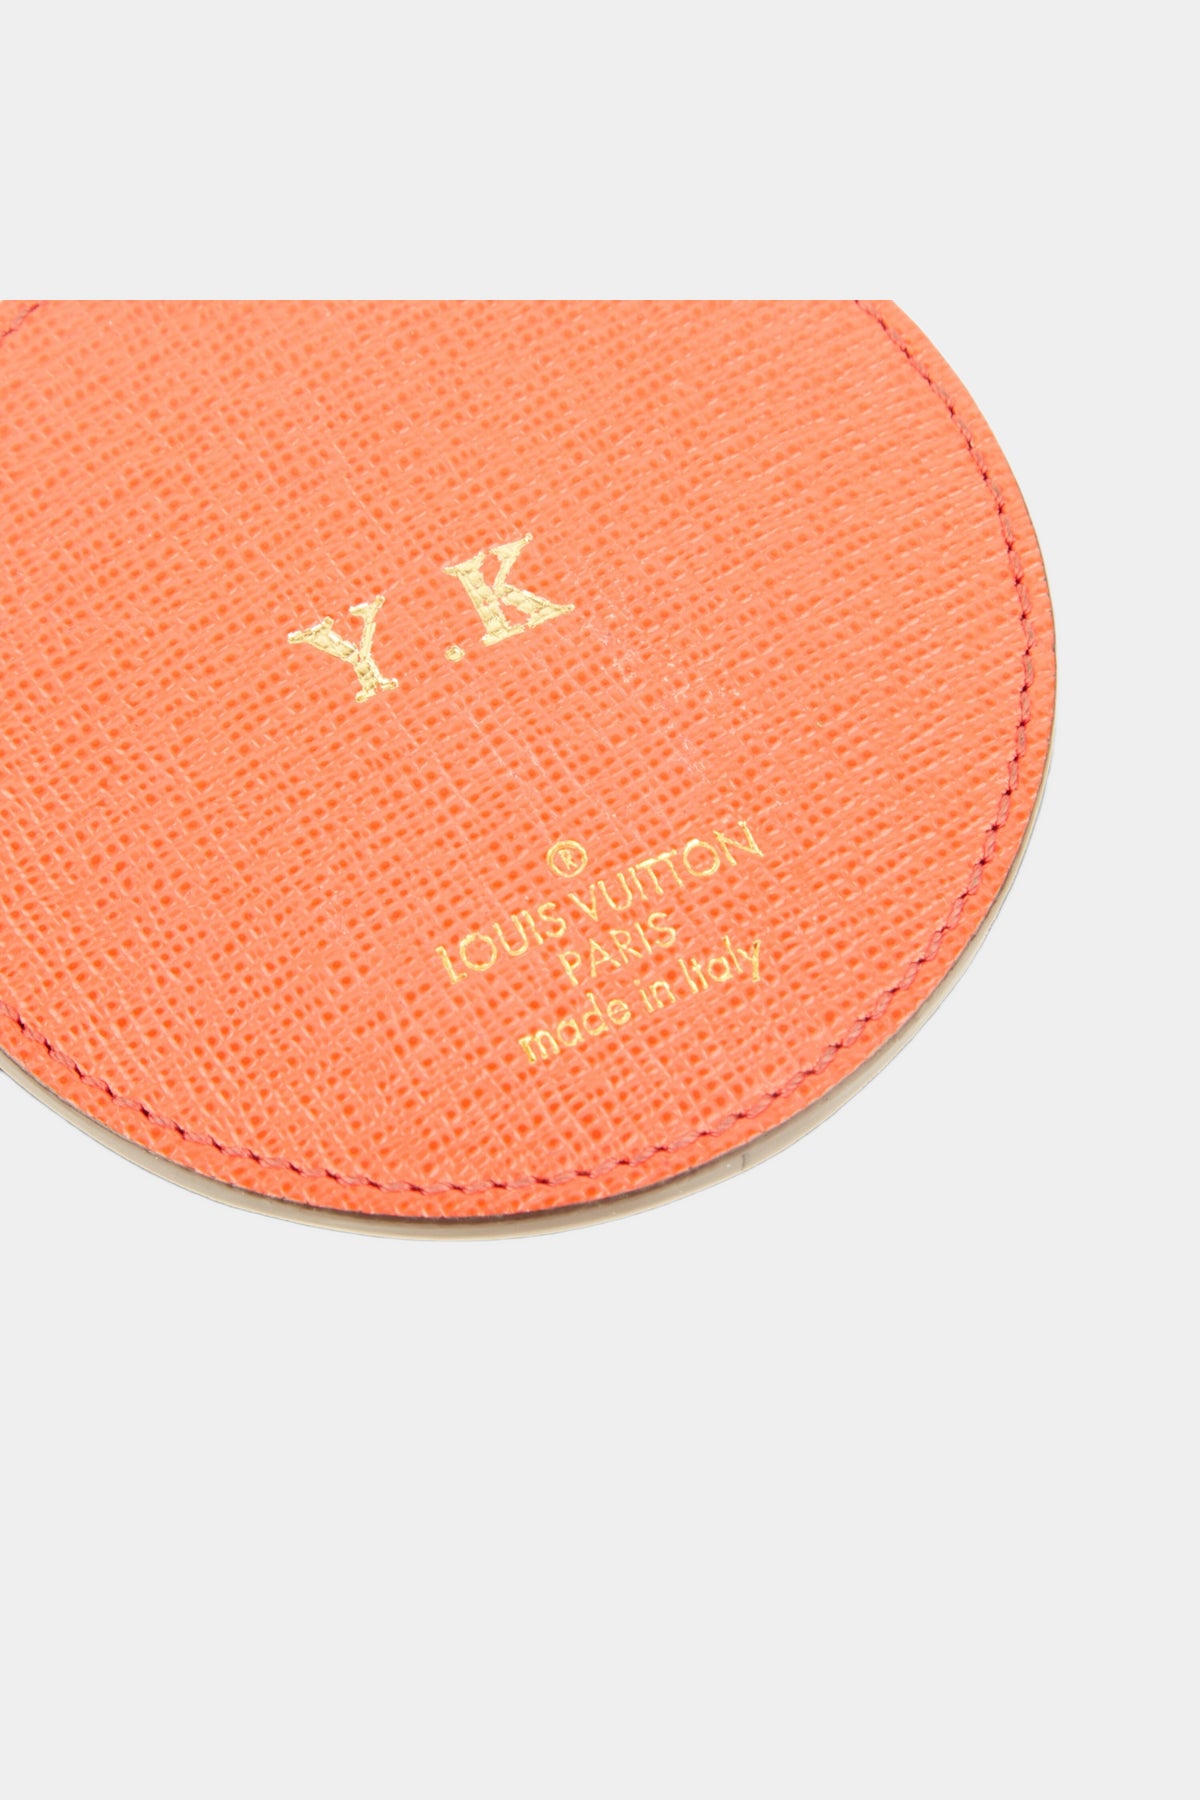 Louis Vuitton Monogram Jungle Dots Bag Charm